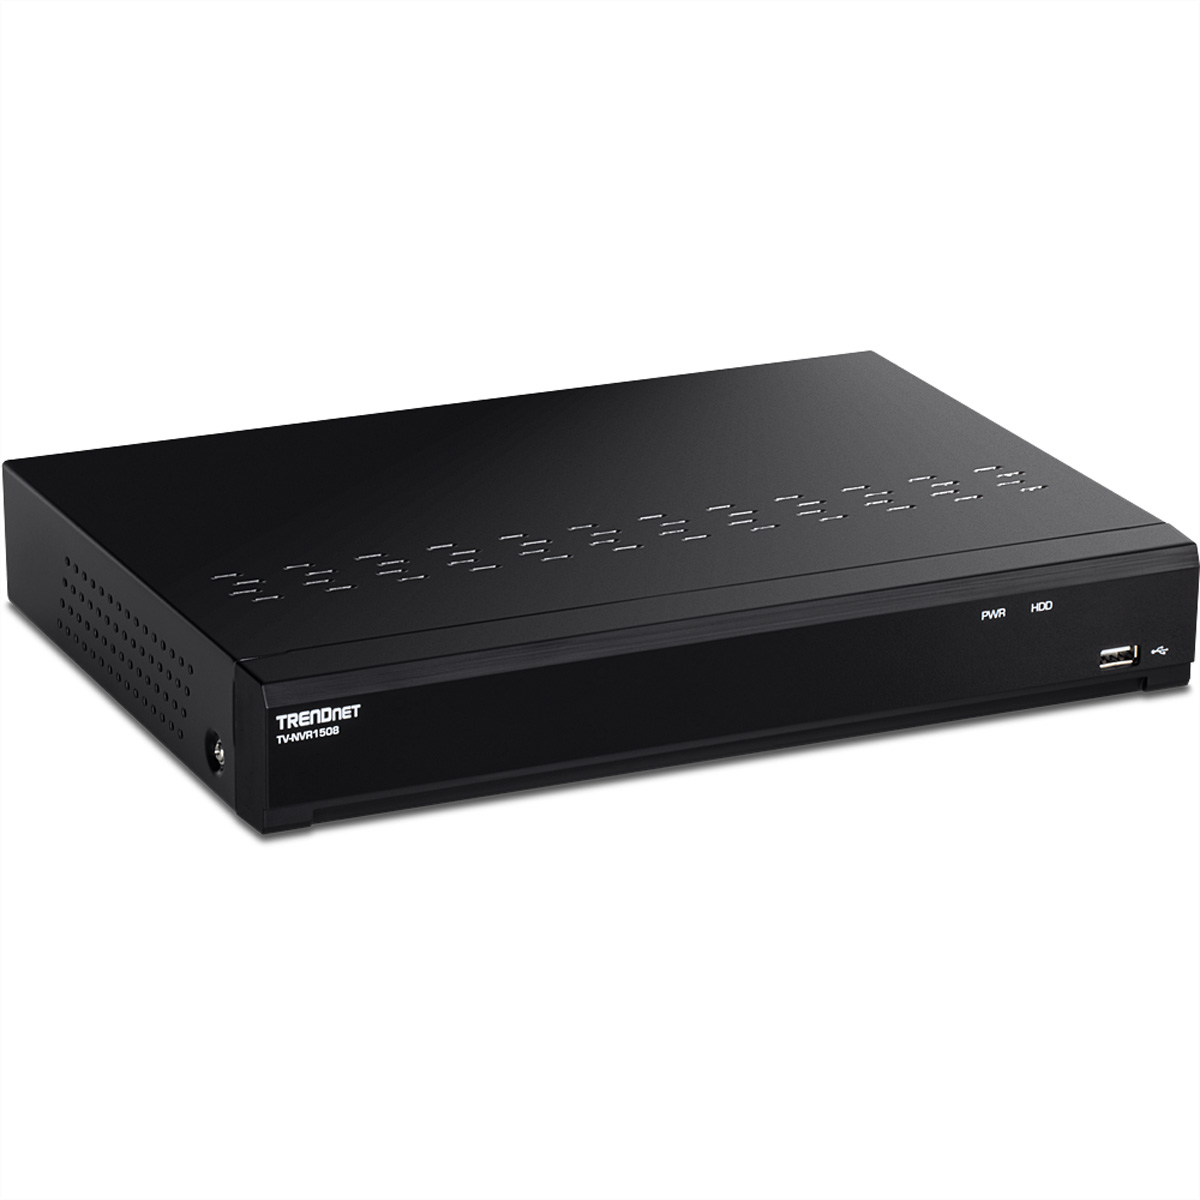 TV-NVR1508 NVR PoE+ TRENDNET Kanal (NVR) UHD Netzwerk-Videorekorder 4K 8